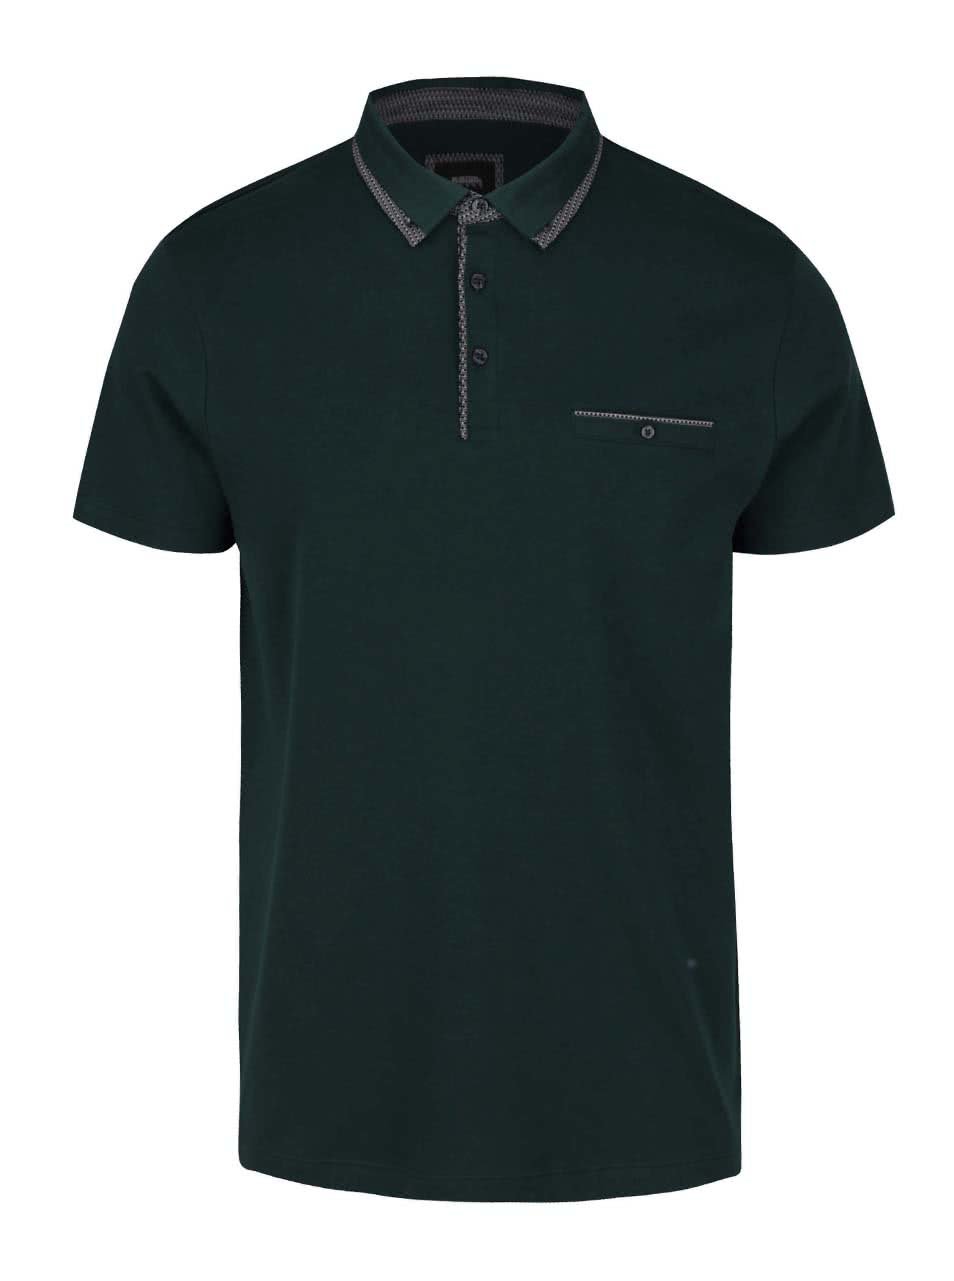 Tmavě zelené polo triko s kapsou Burton Menswear London